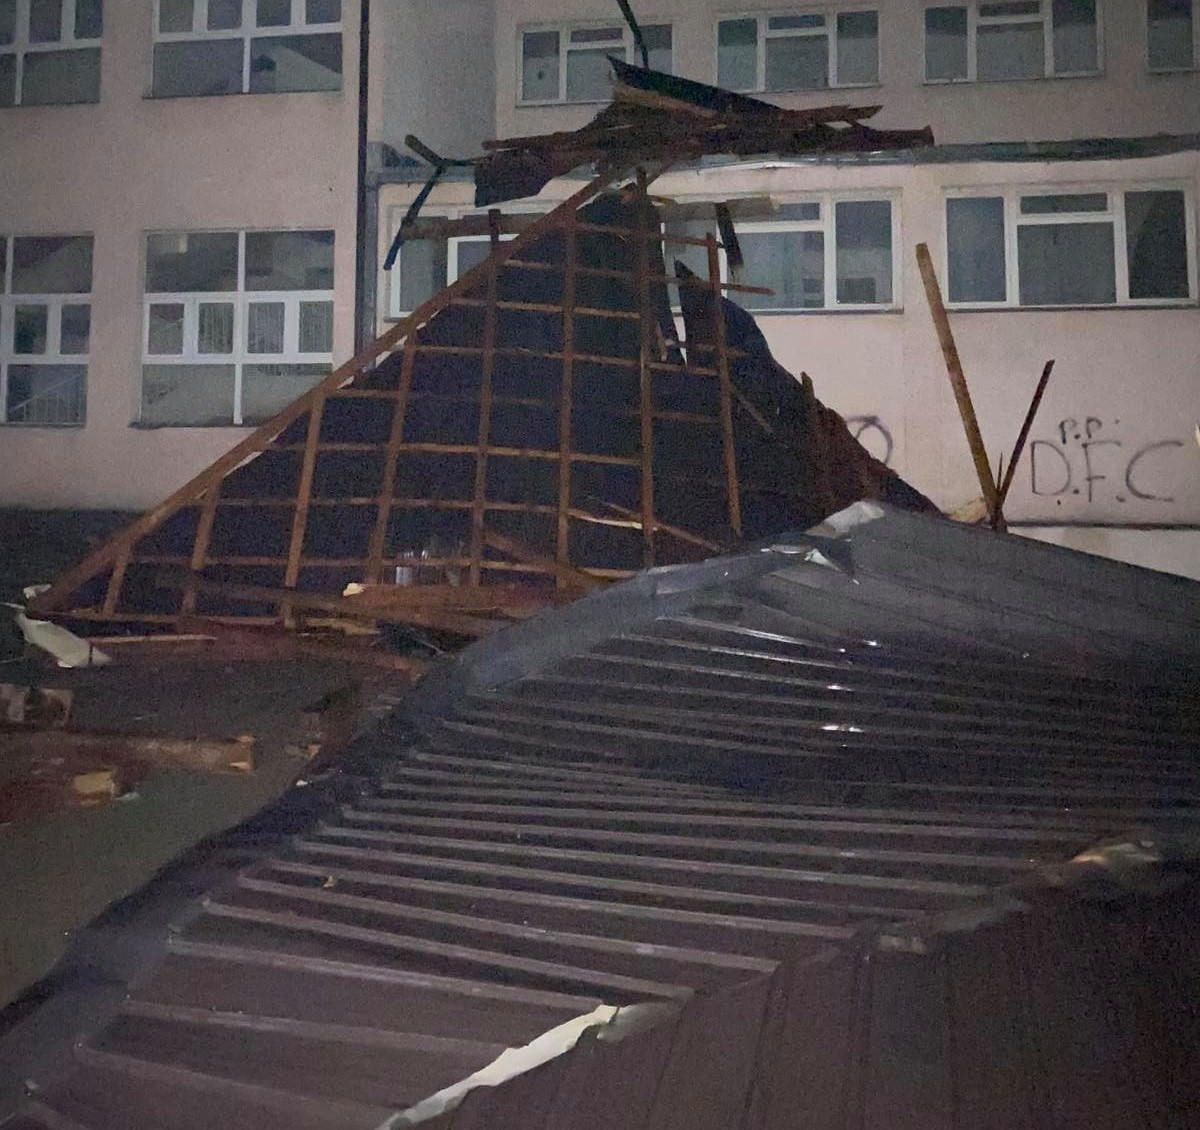 Stuhia shkakton dëme të konsiderueshme në Gjilan